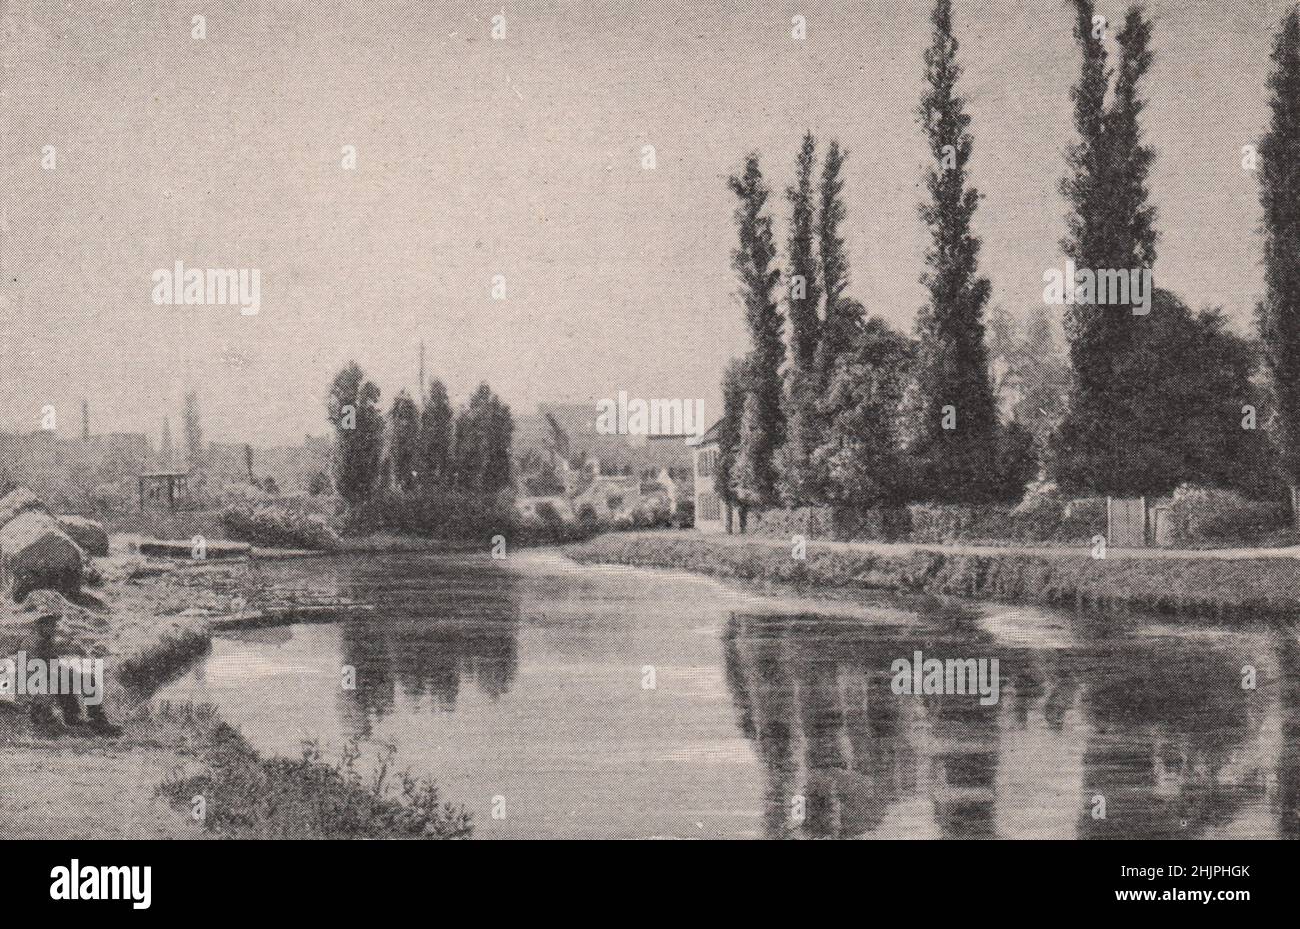 La scena fluviale a cui i maestri fiamminghi amavano dipingere. Belgio (1923) Foto Stock